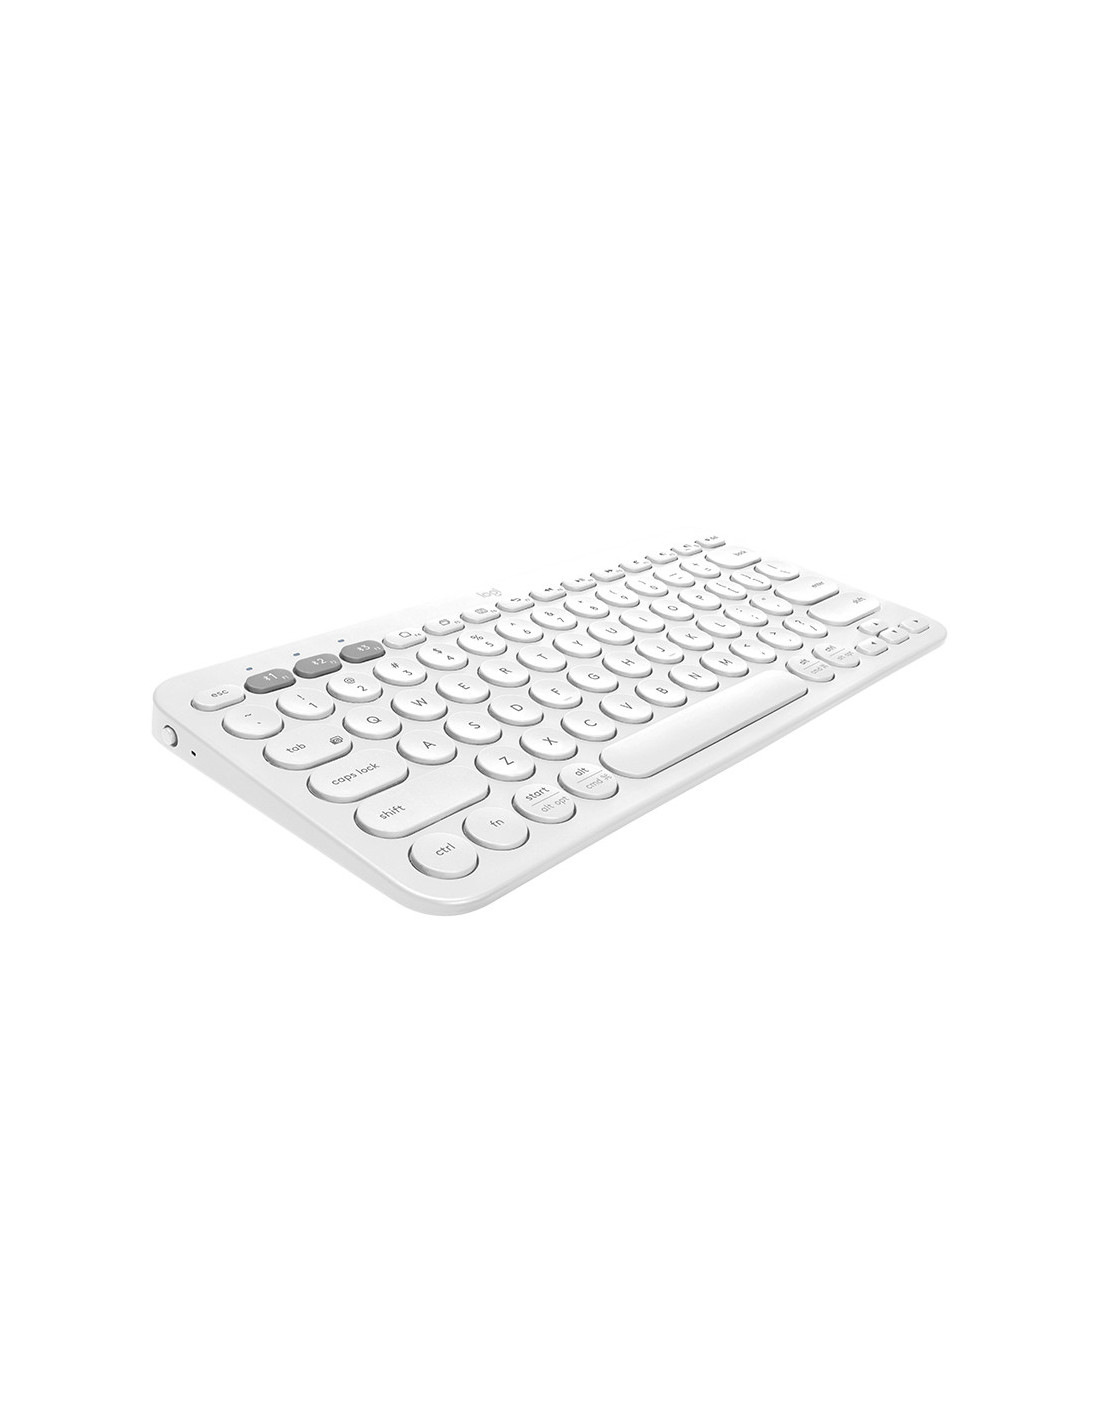 Logitech Wireless Keyboard K380 - Branco (Inglês)